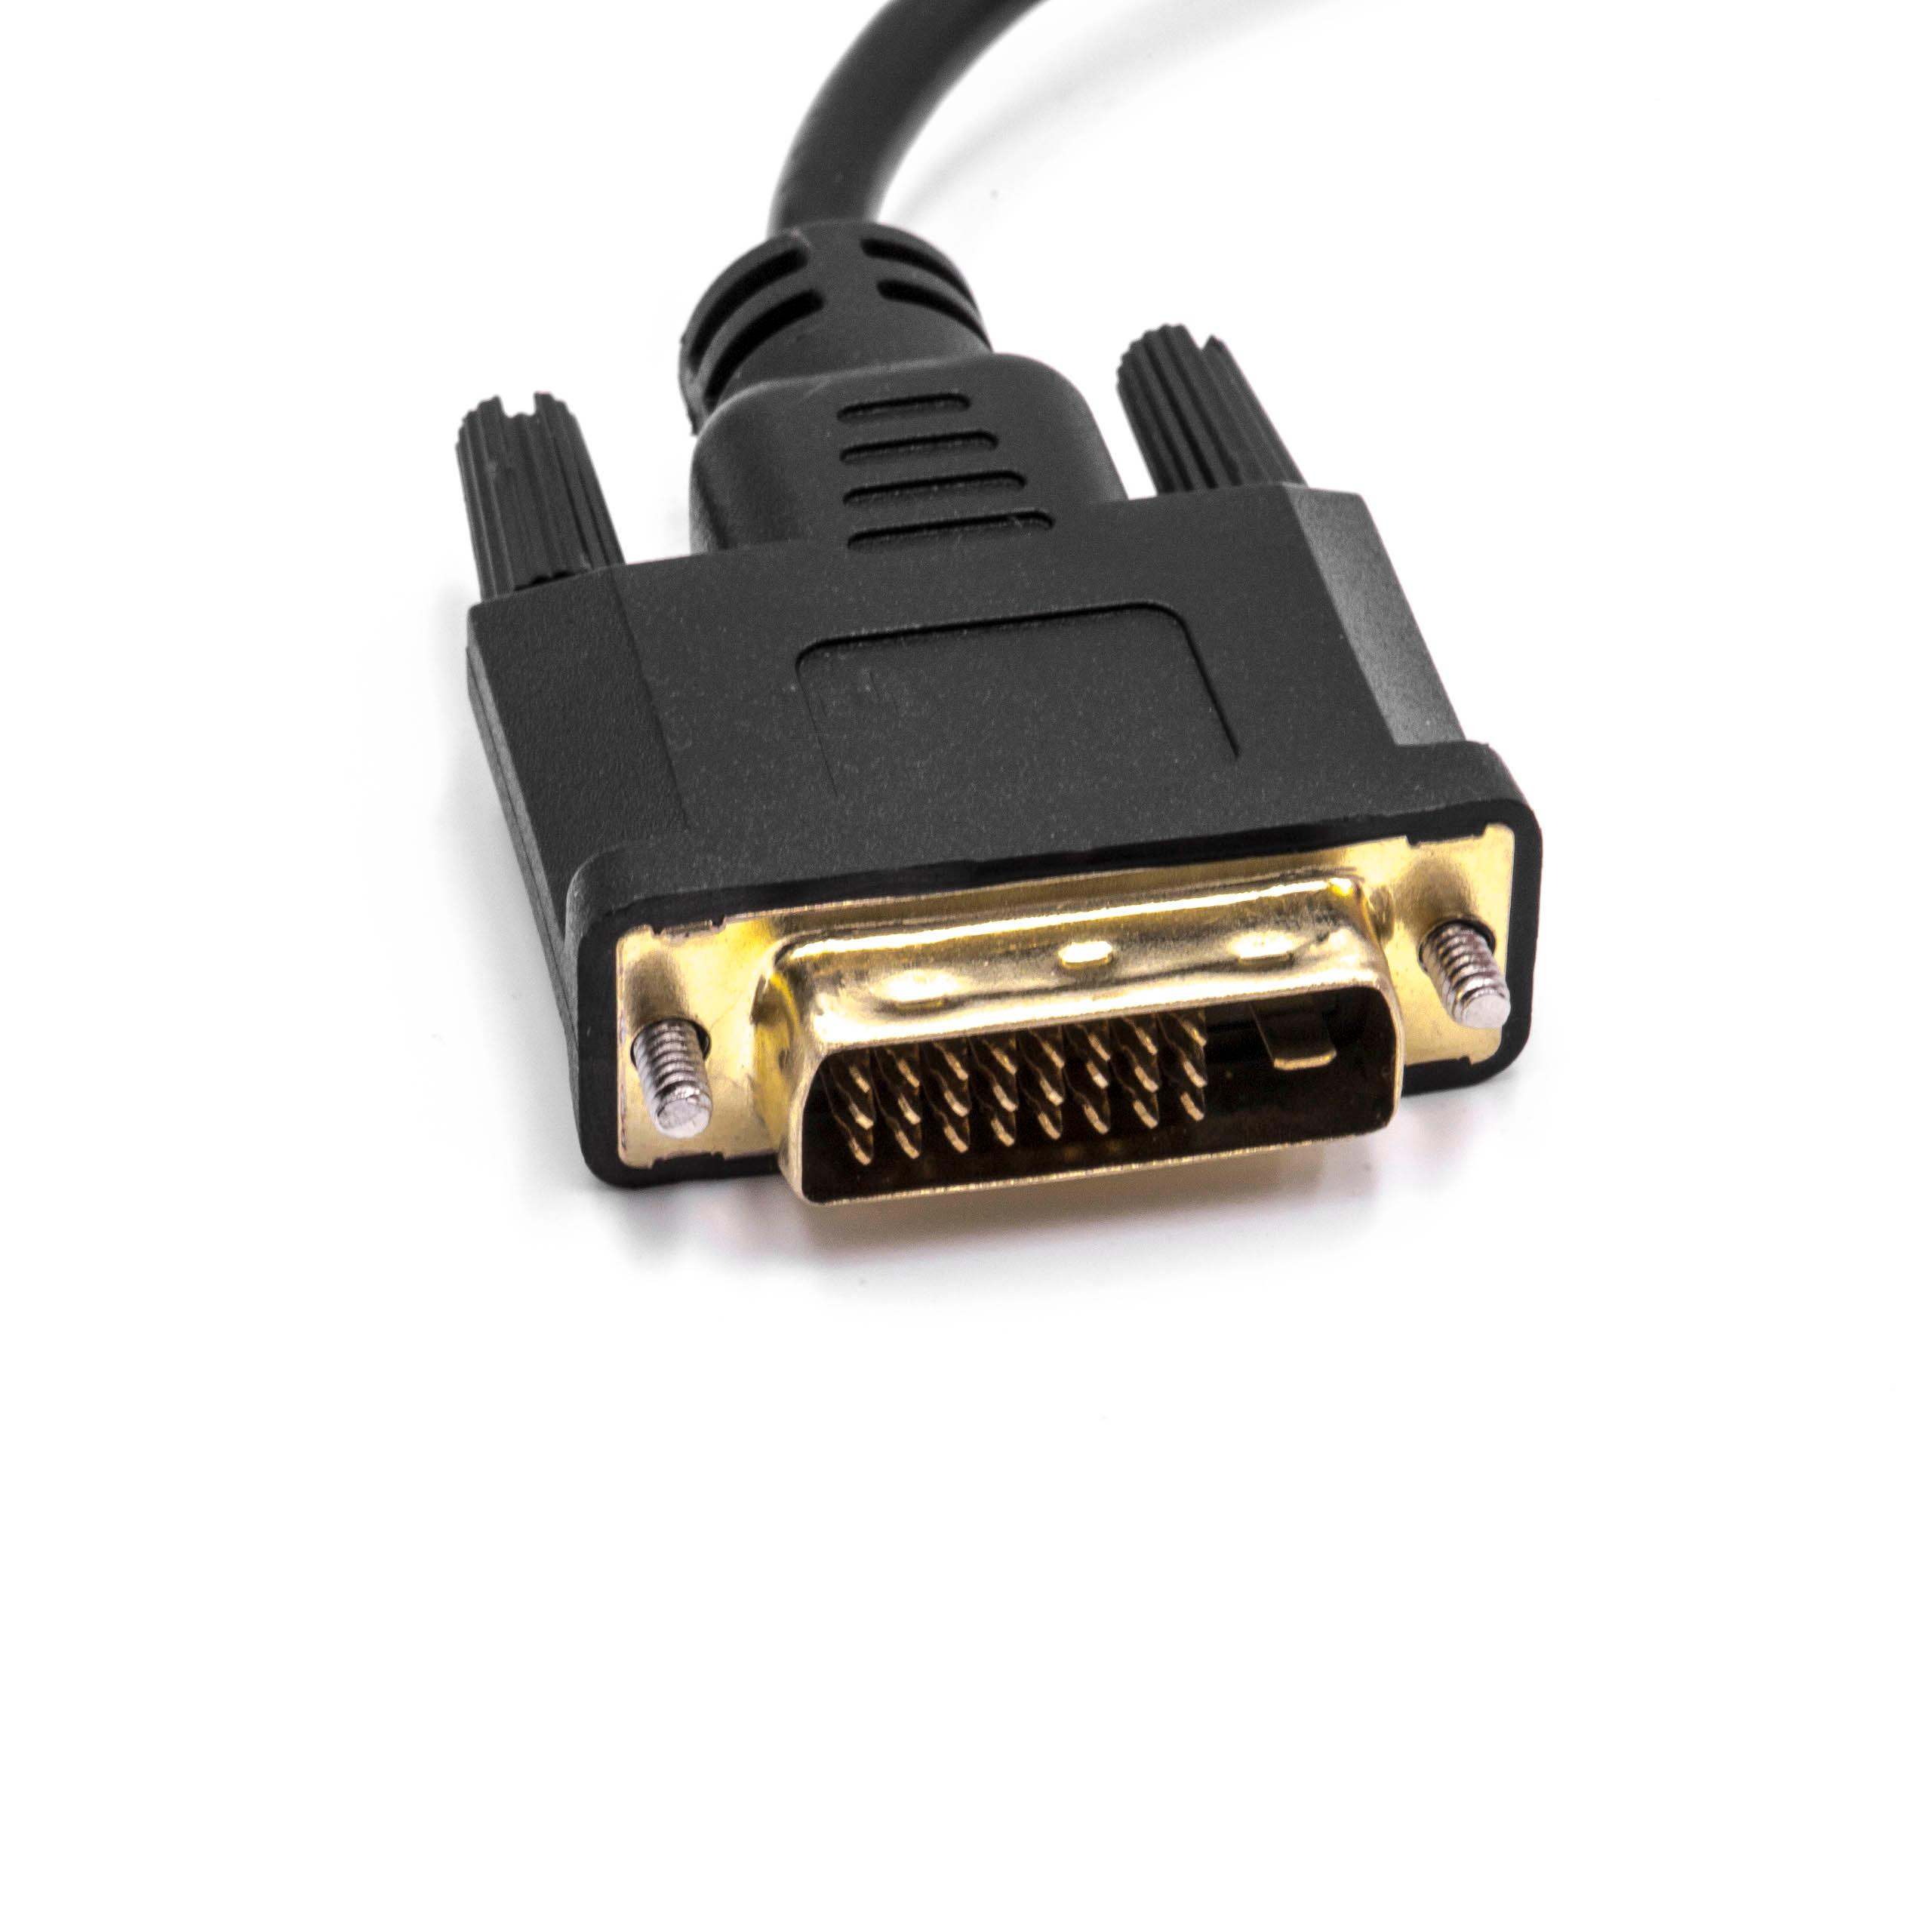 vhbw Adaptador DVI macho a VGA hembra para conectar sistemas DVI a dispositivos VGA - Cable adaptador, 10 cm n